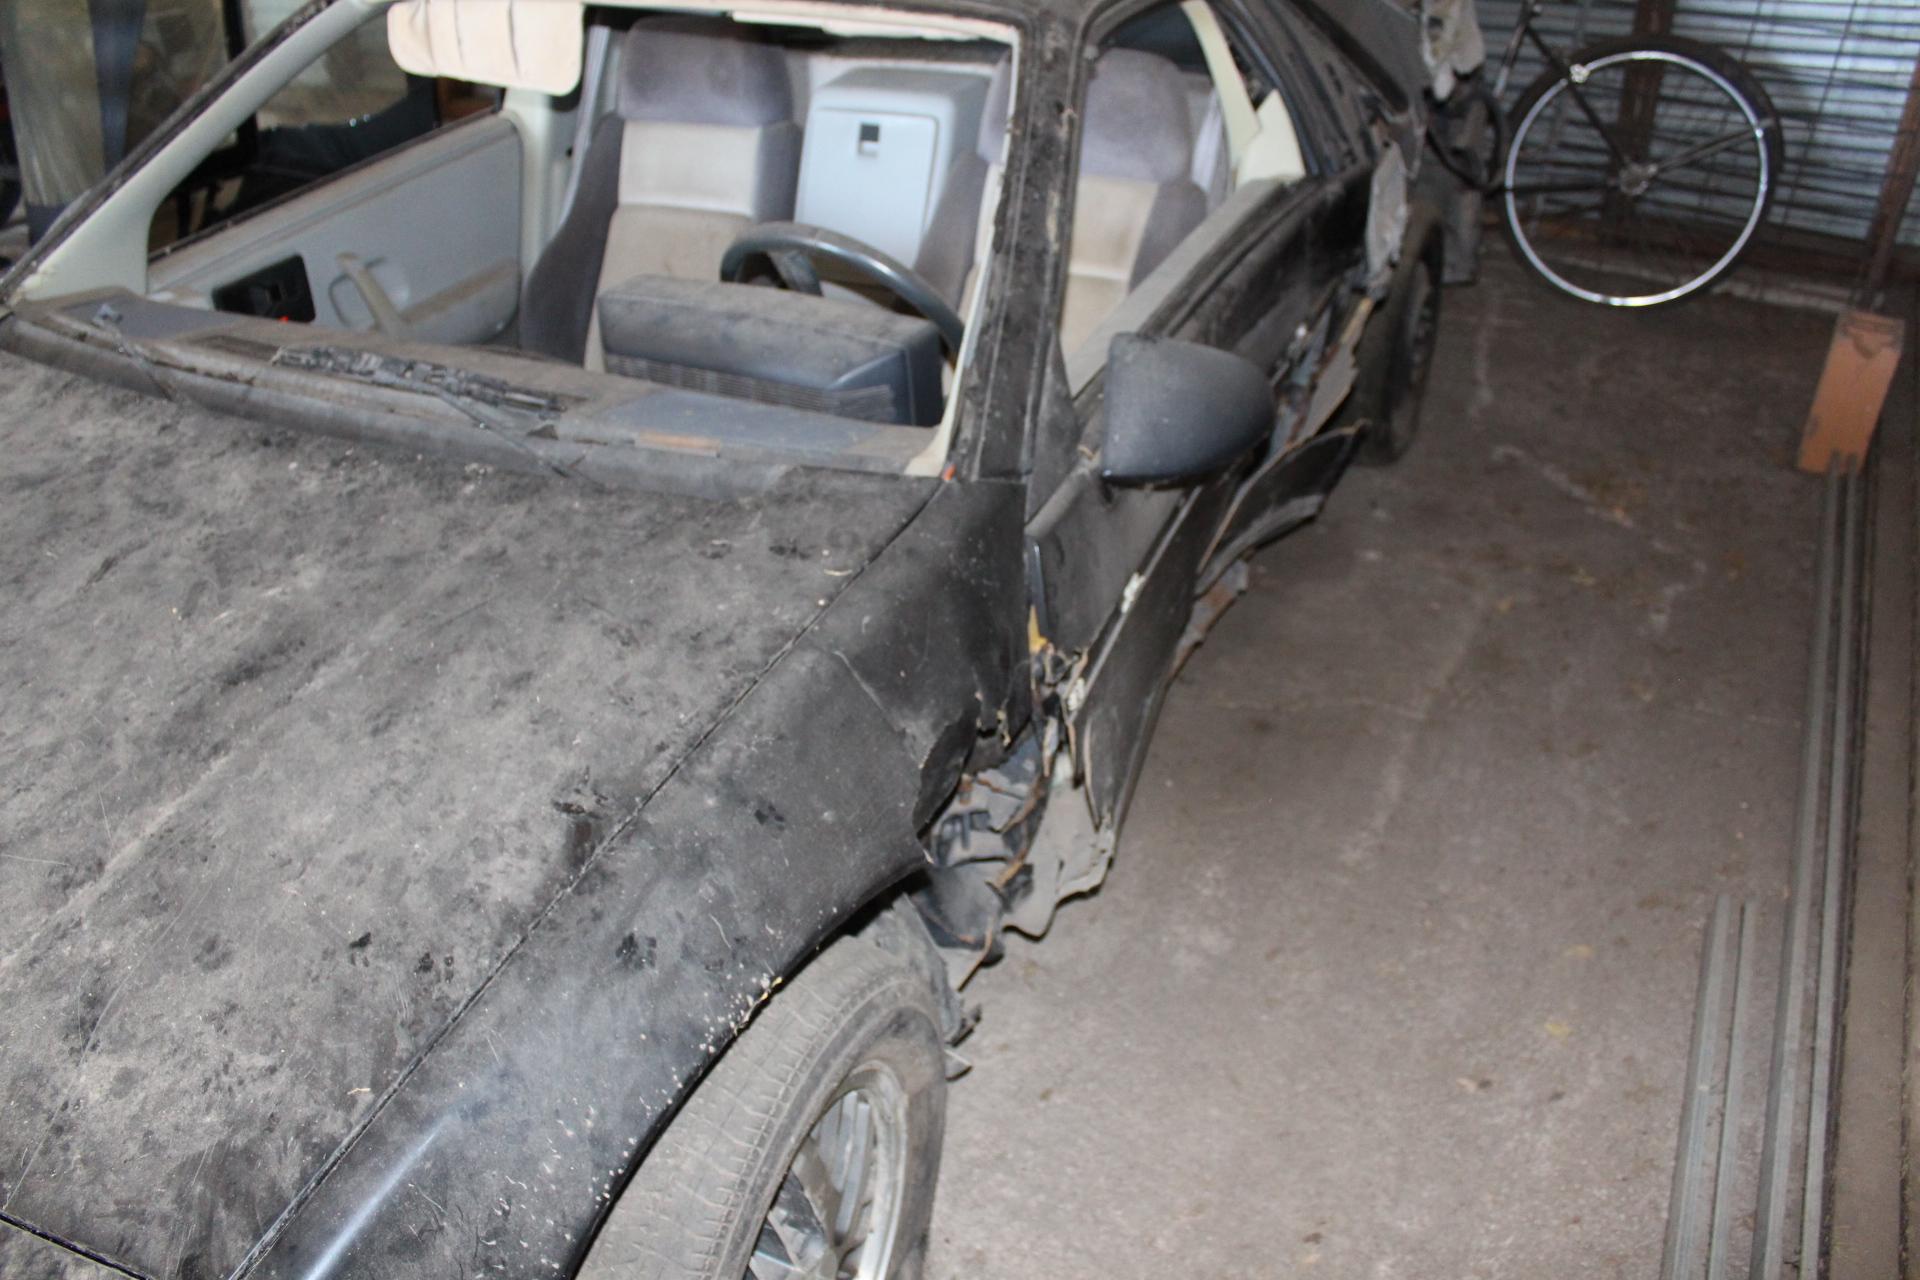 Pontiac Fiero GT, Black, Auto, no windshield, parts car